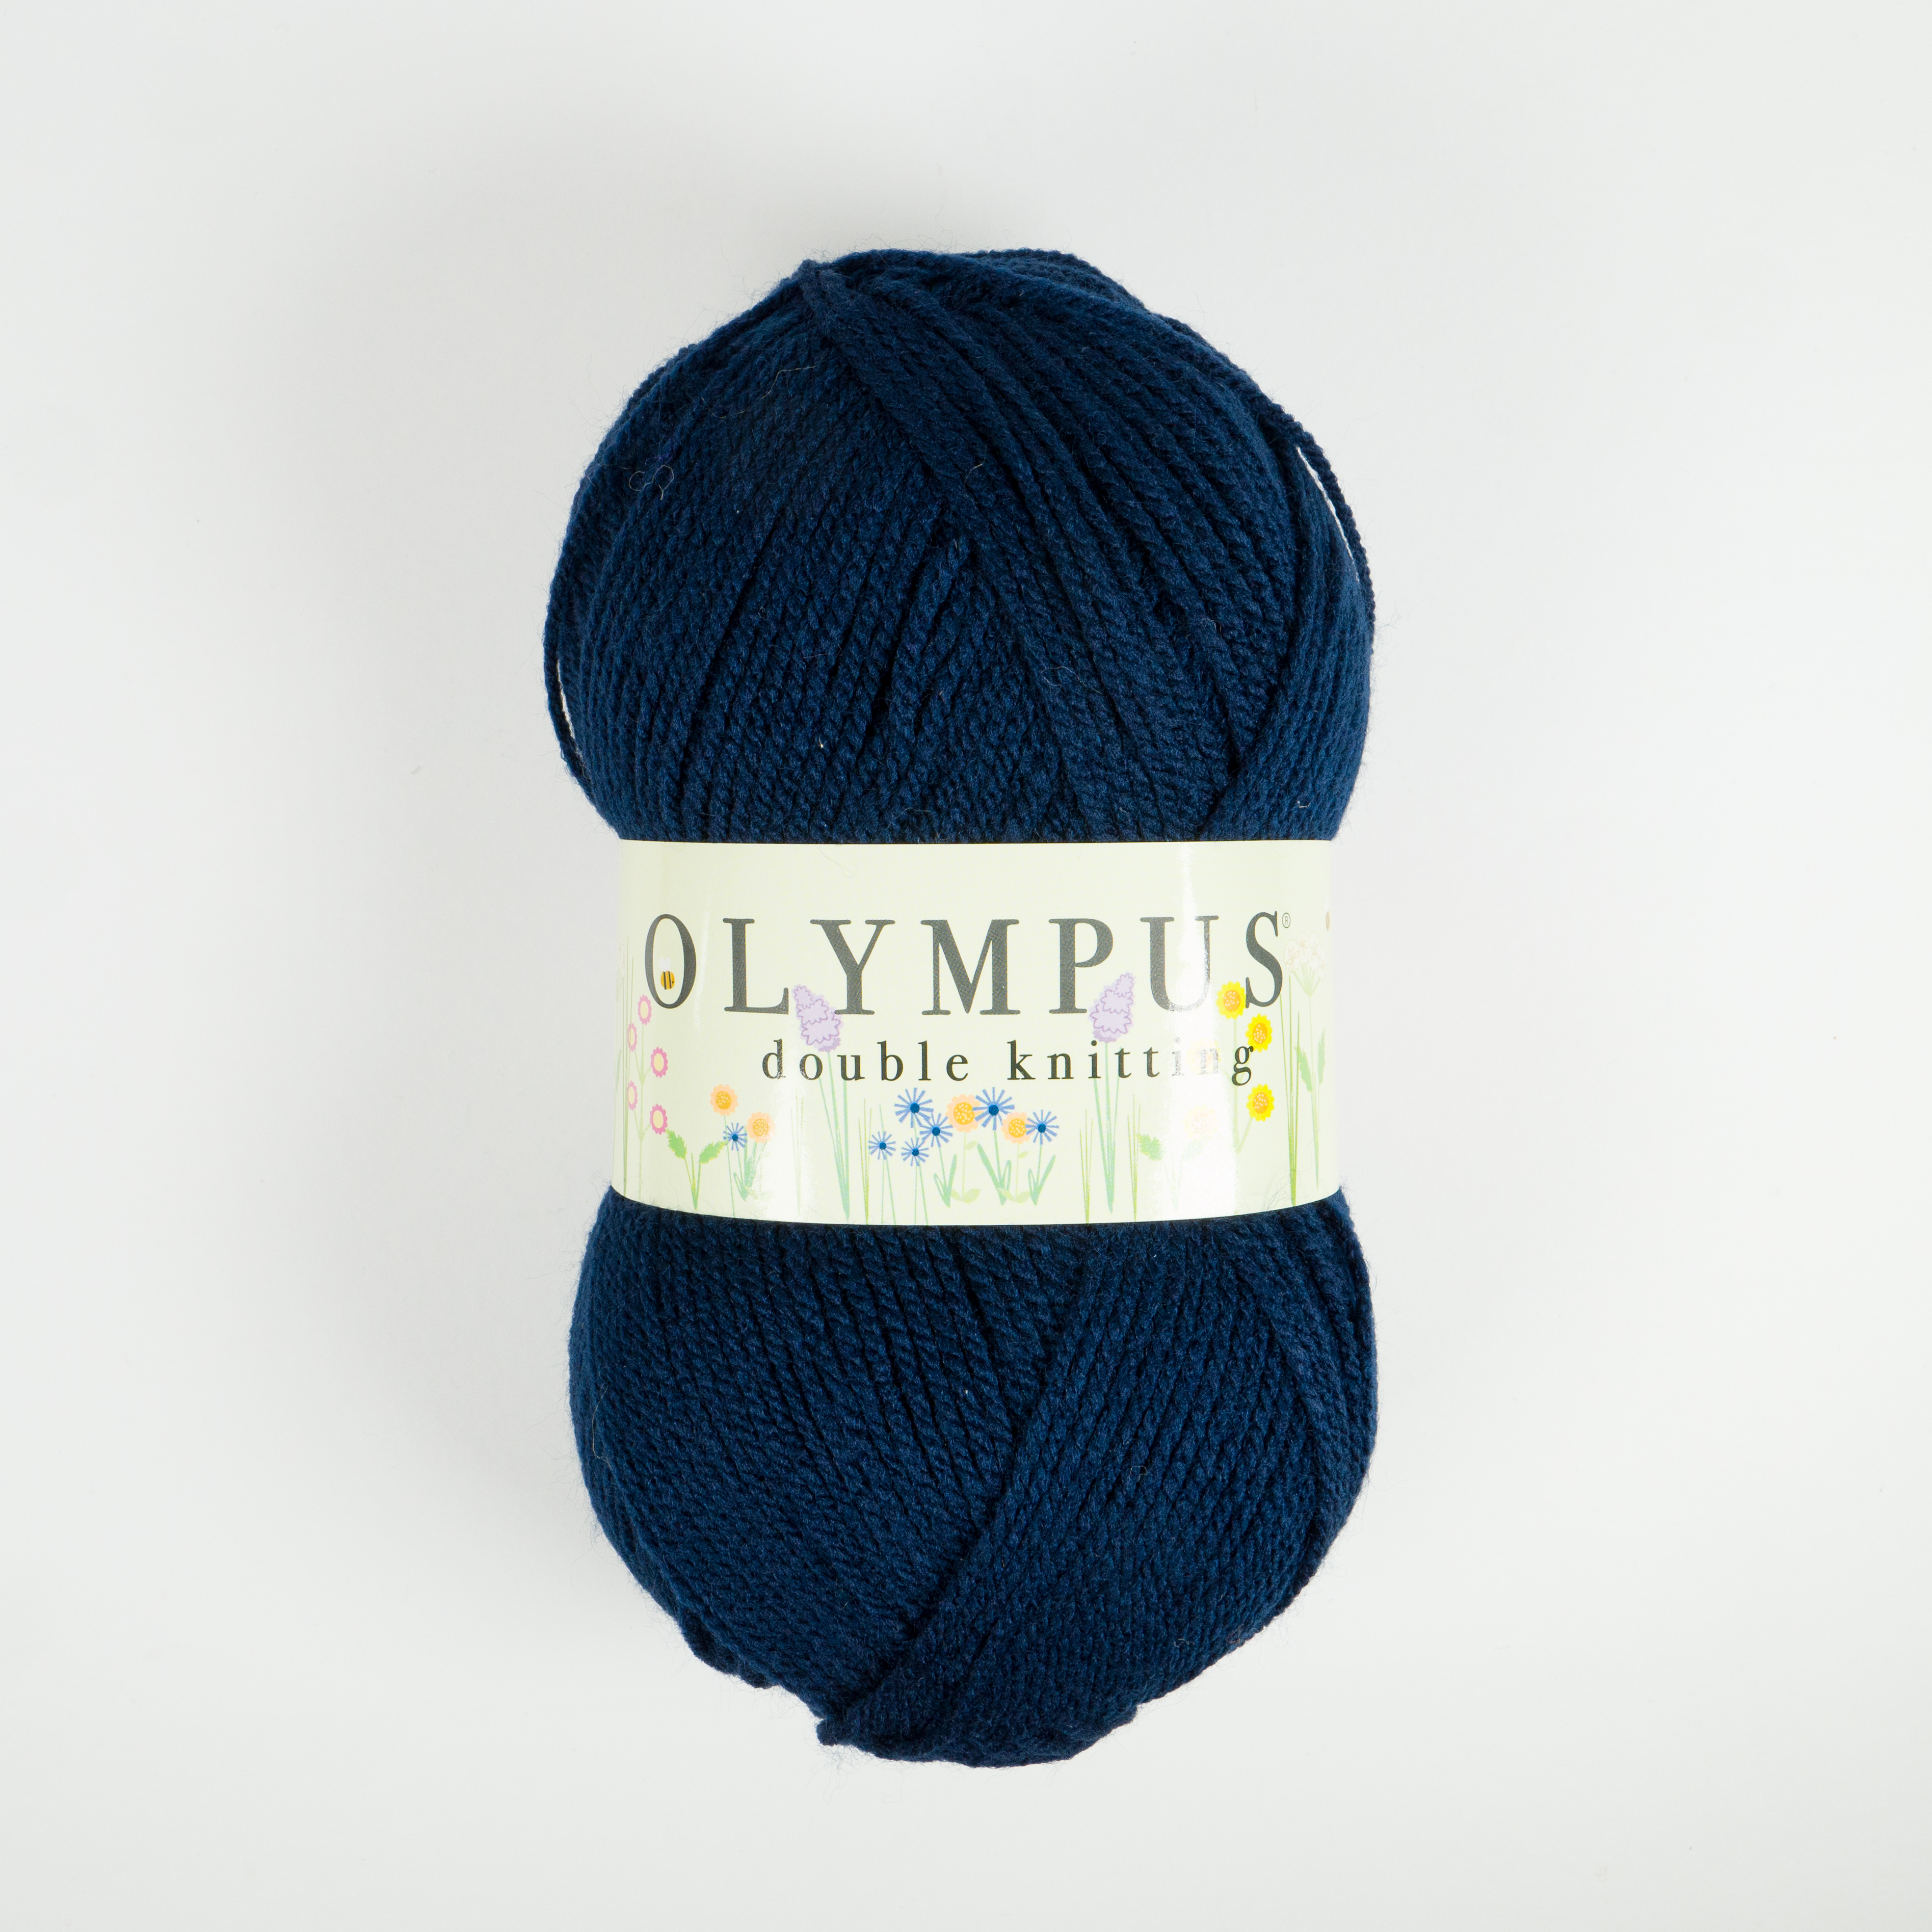 OLYMPUS DK 10X100G 864 Blue